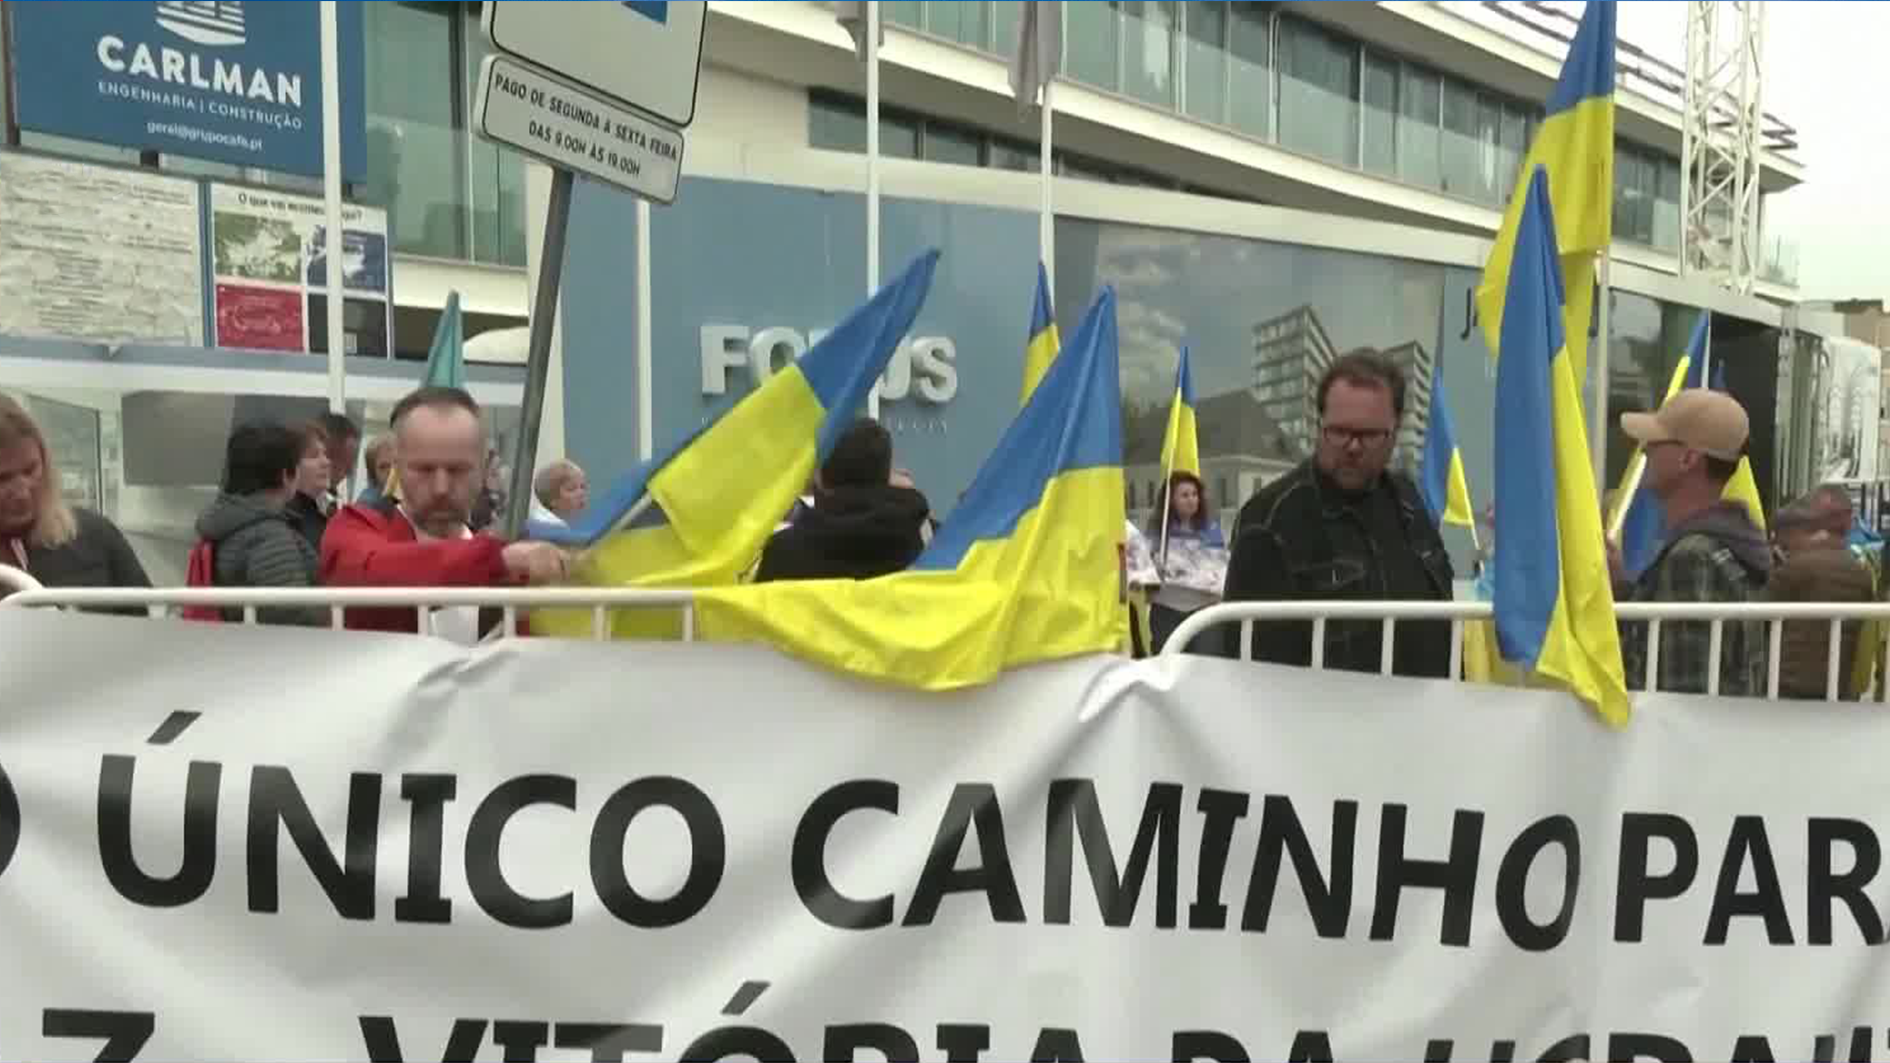 乌克兰人葡萄牙示威 抗议巴西总统言论